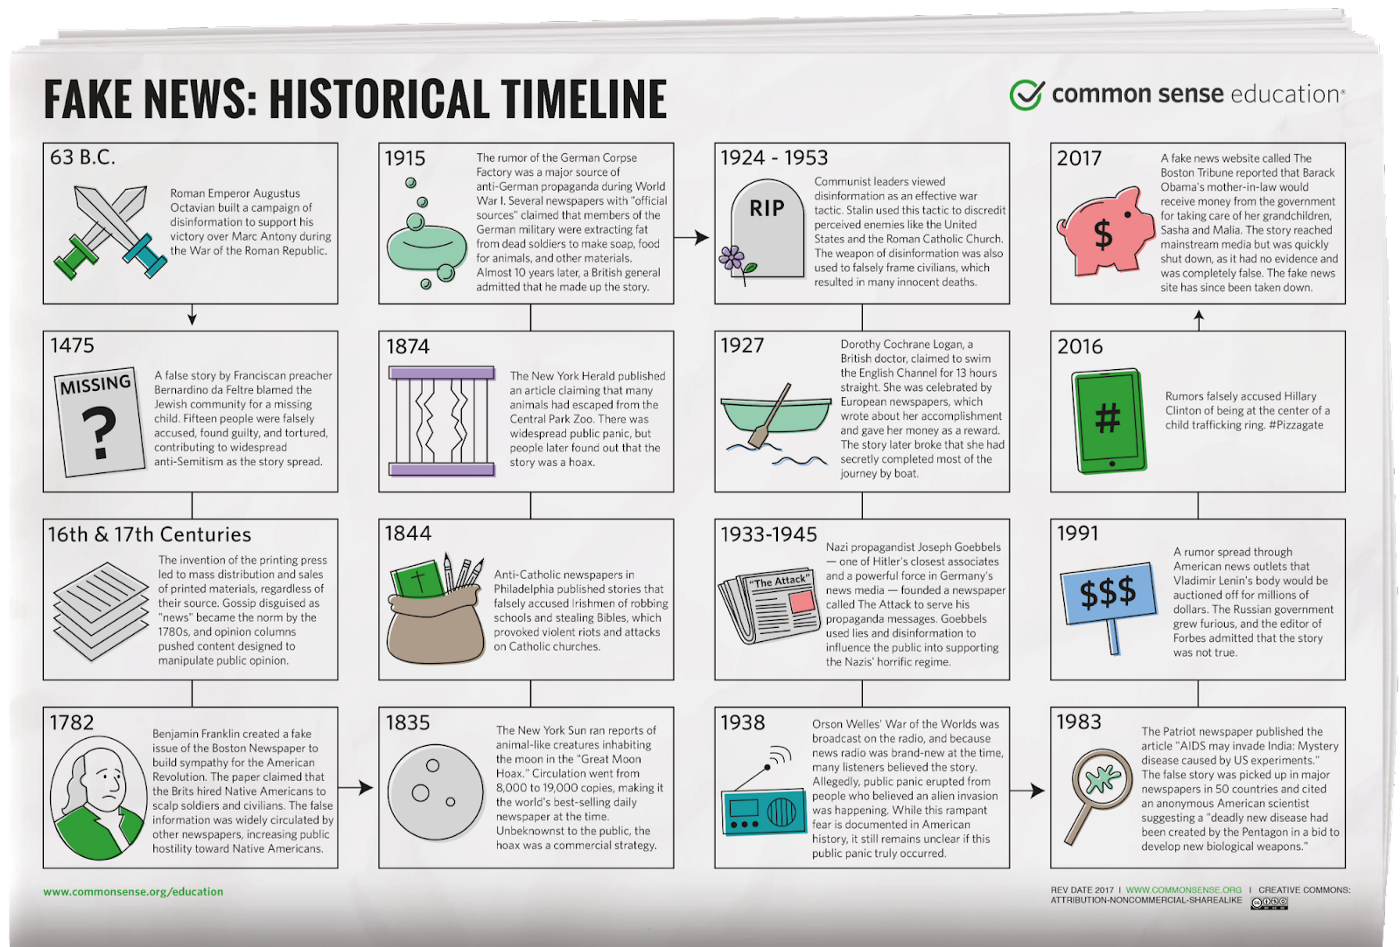 Cronología de algunas fake news históricas